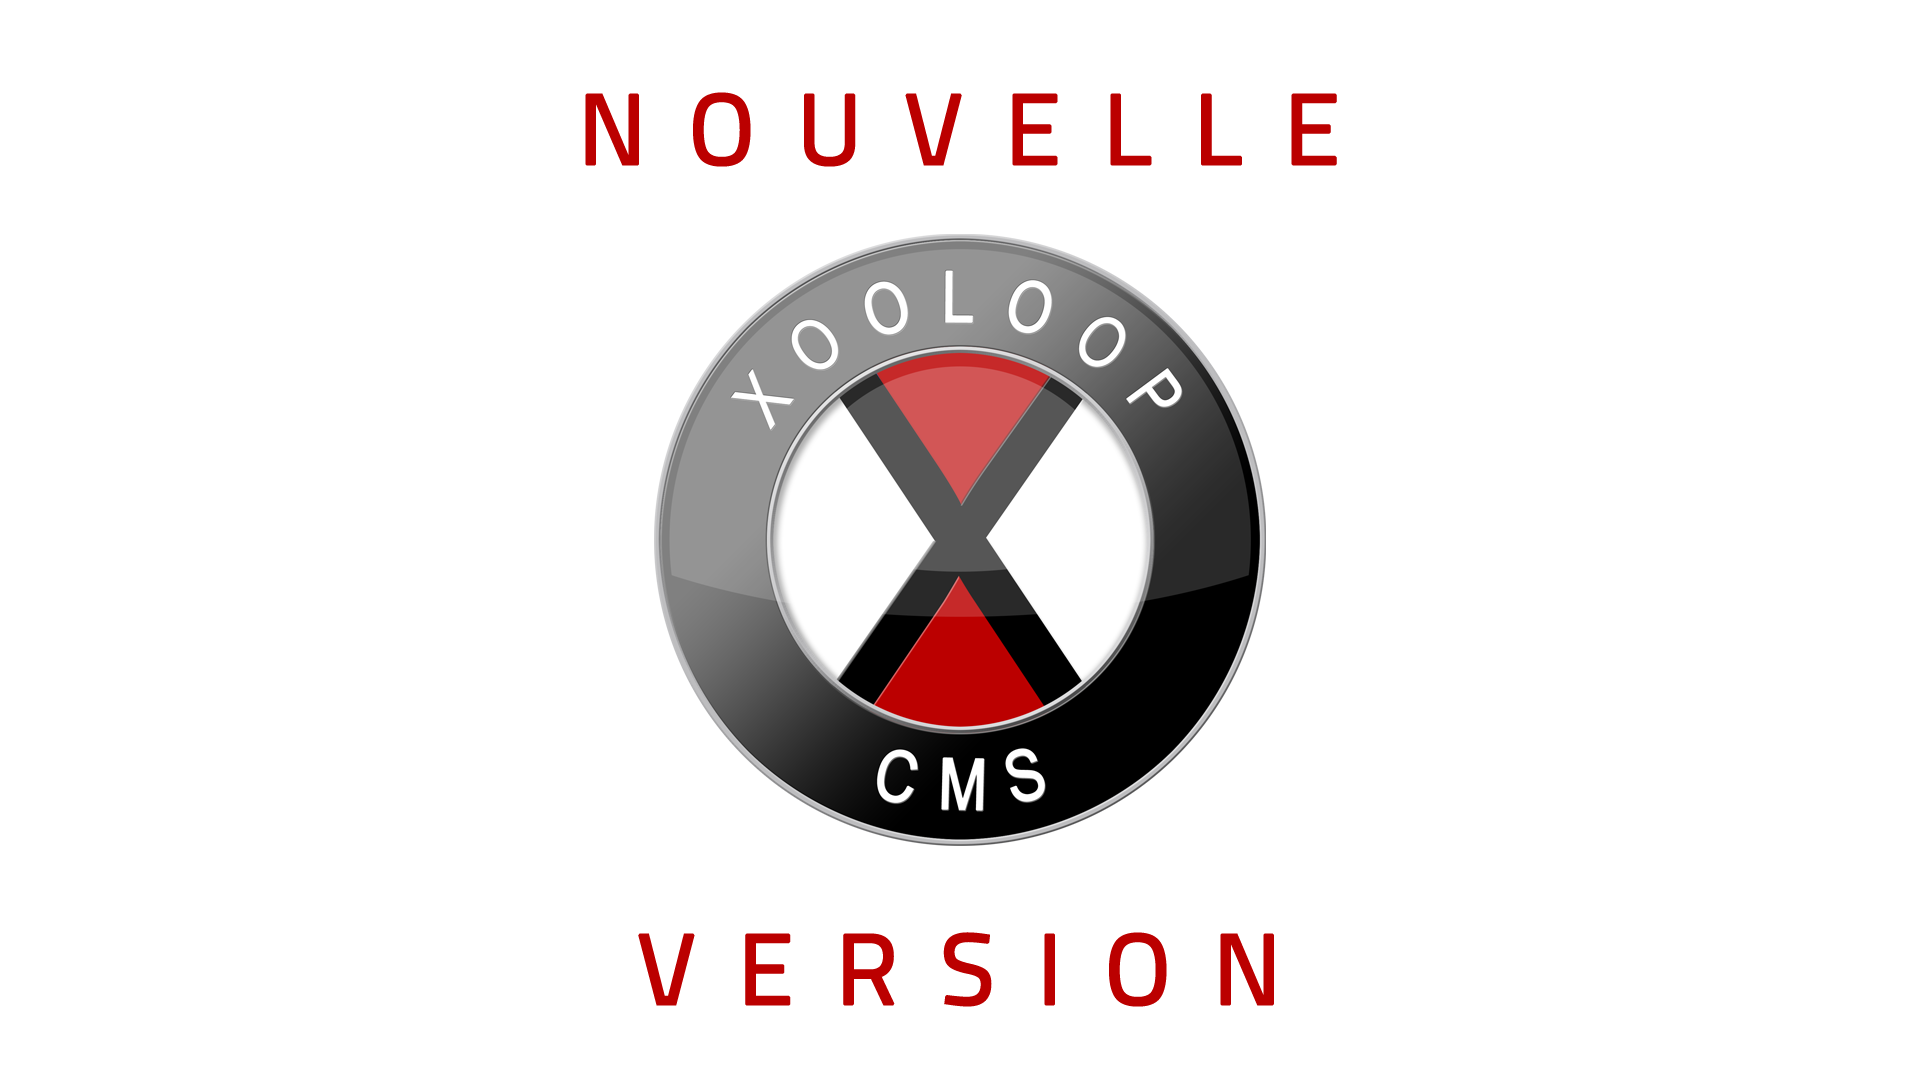 Nouvelle version de Xooloop CMS (v3.6.1)